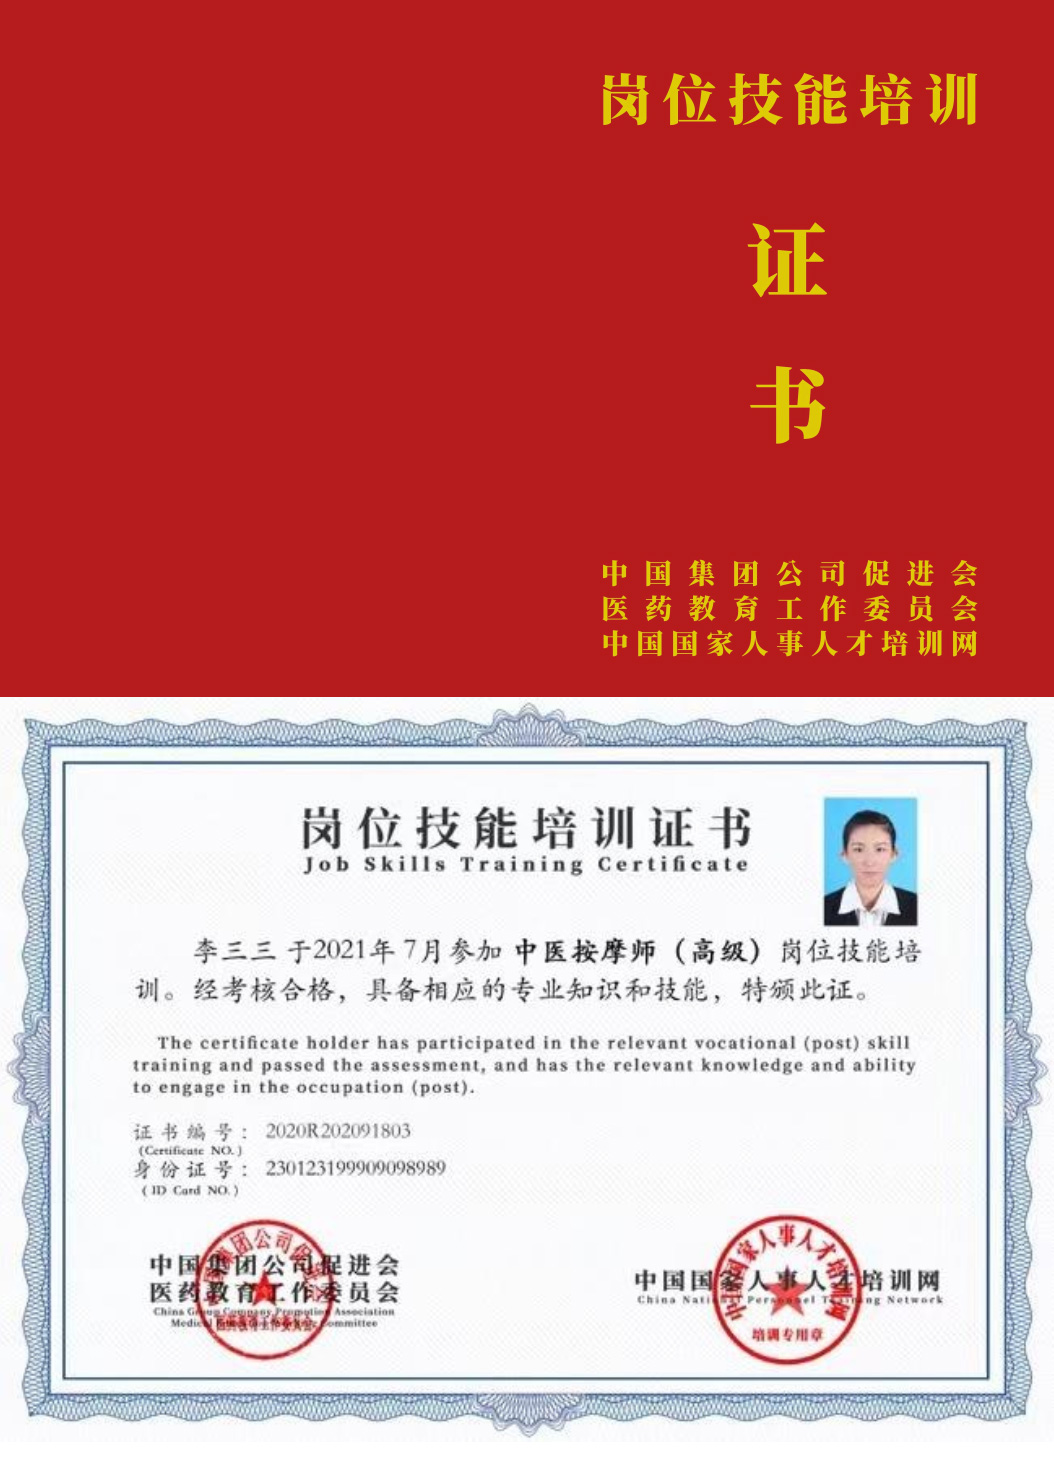 中国国家人事人才培训网 环境健康维护师 岗位技能培训证书